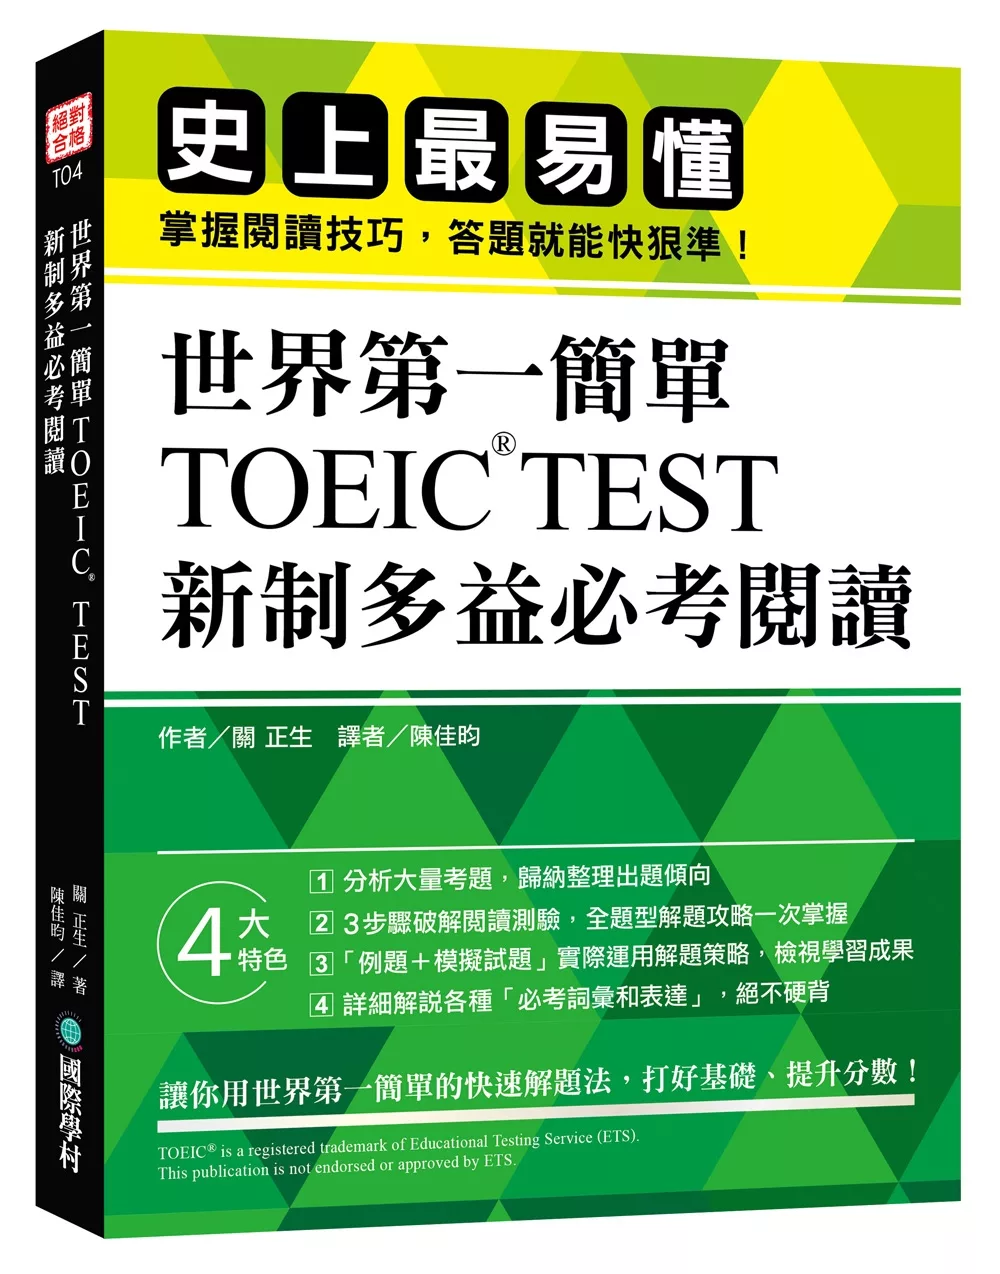 博客來 世界第一簡單 Toeic Test 新制多益必考閱讀 史上最易懂 掌握閱讀技巧 答題就能快狠準